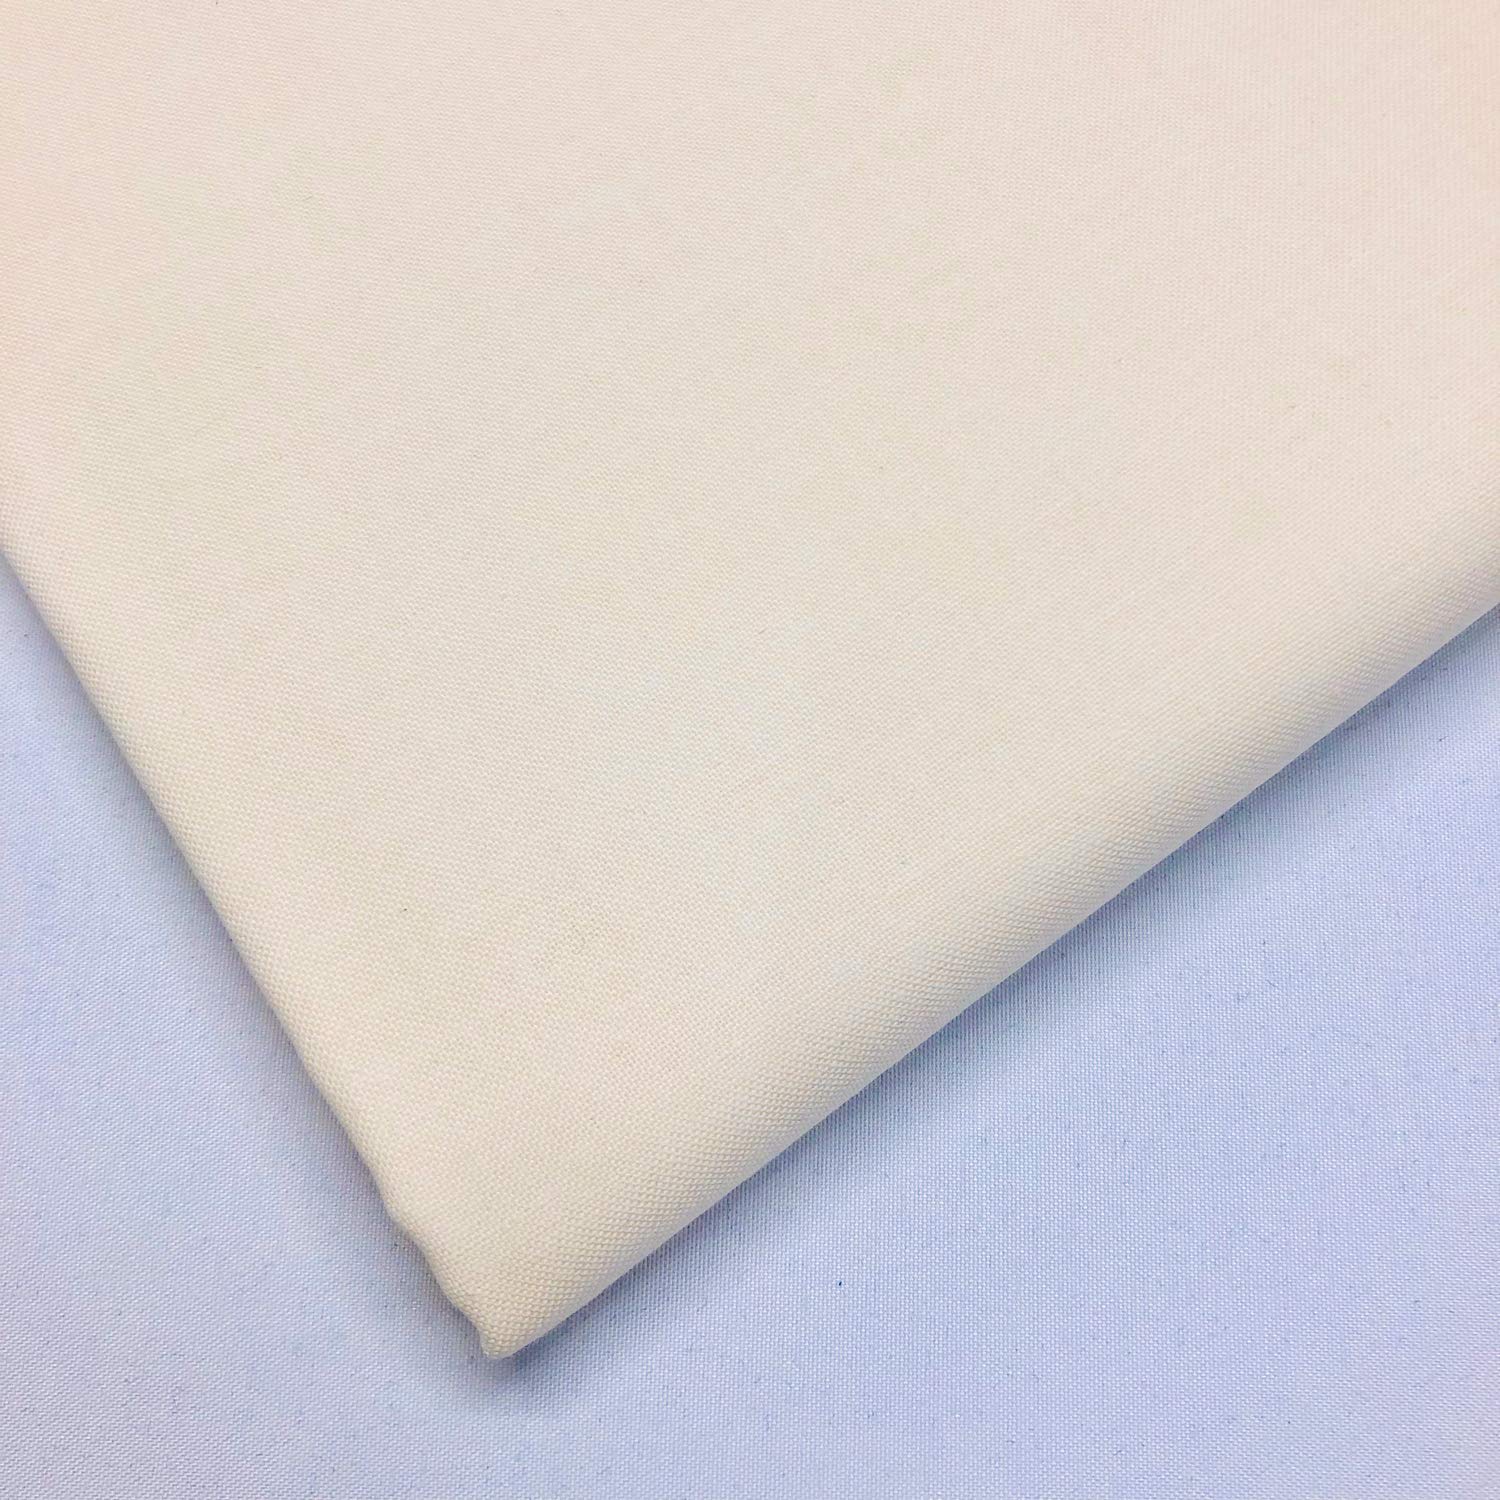 Magnifique Tissu uni 100% coton 150 cm de large 150 g/m² (crème, demi-mètre) wYTw1nnIK grand